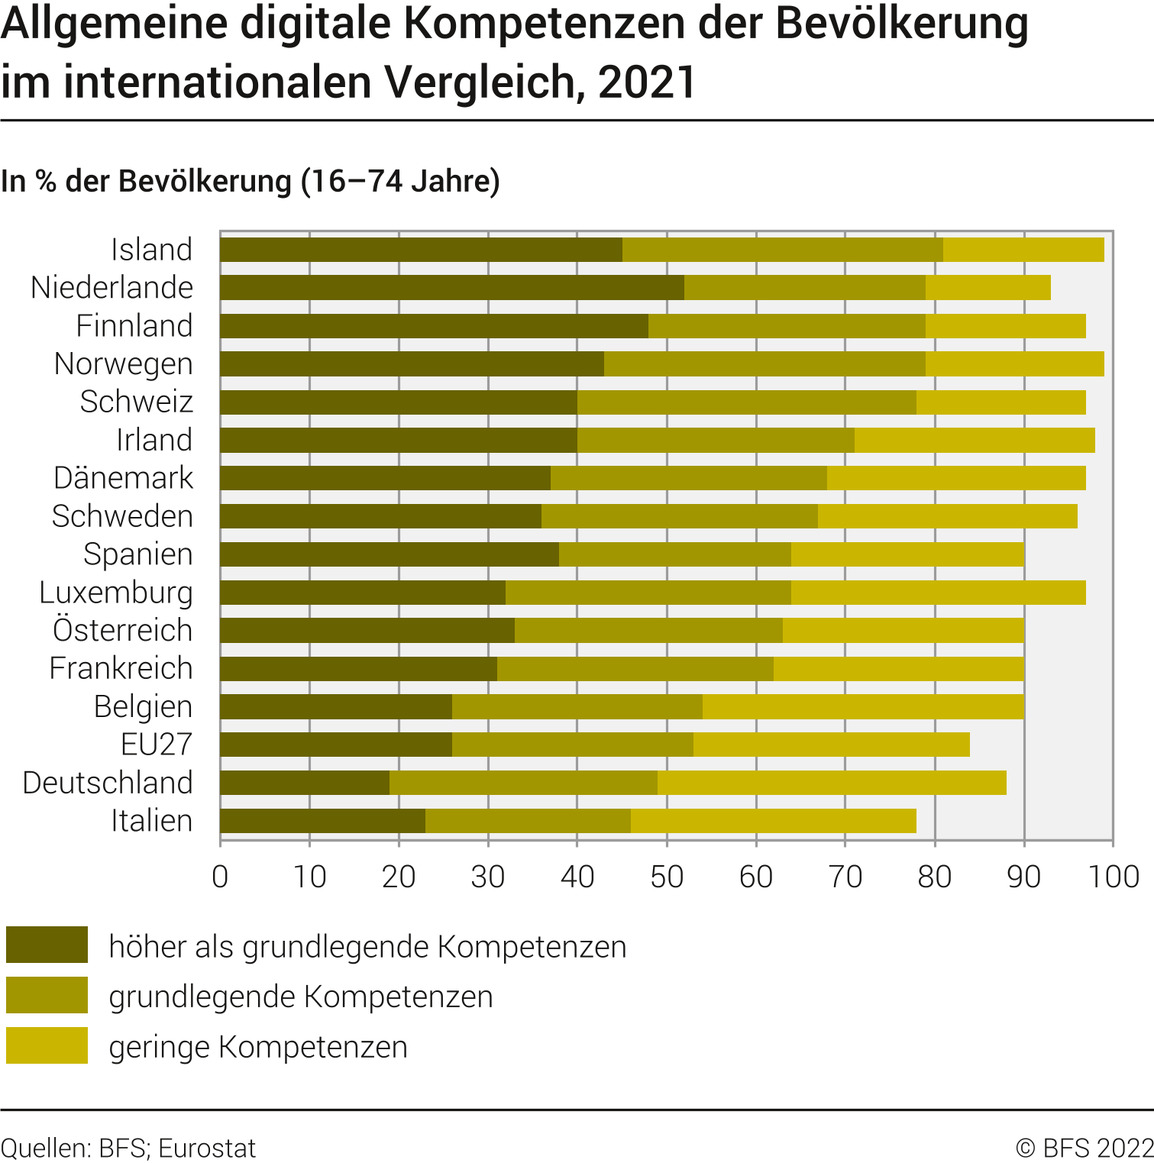 Die Niederlande führen den internationalen Vergleich zu digitalen Kompetenzen an. 